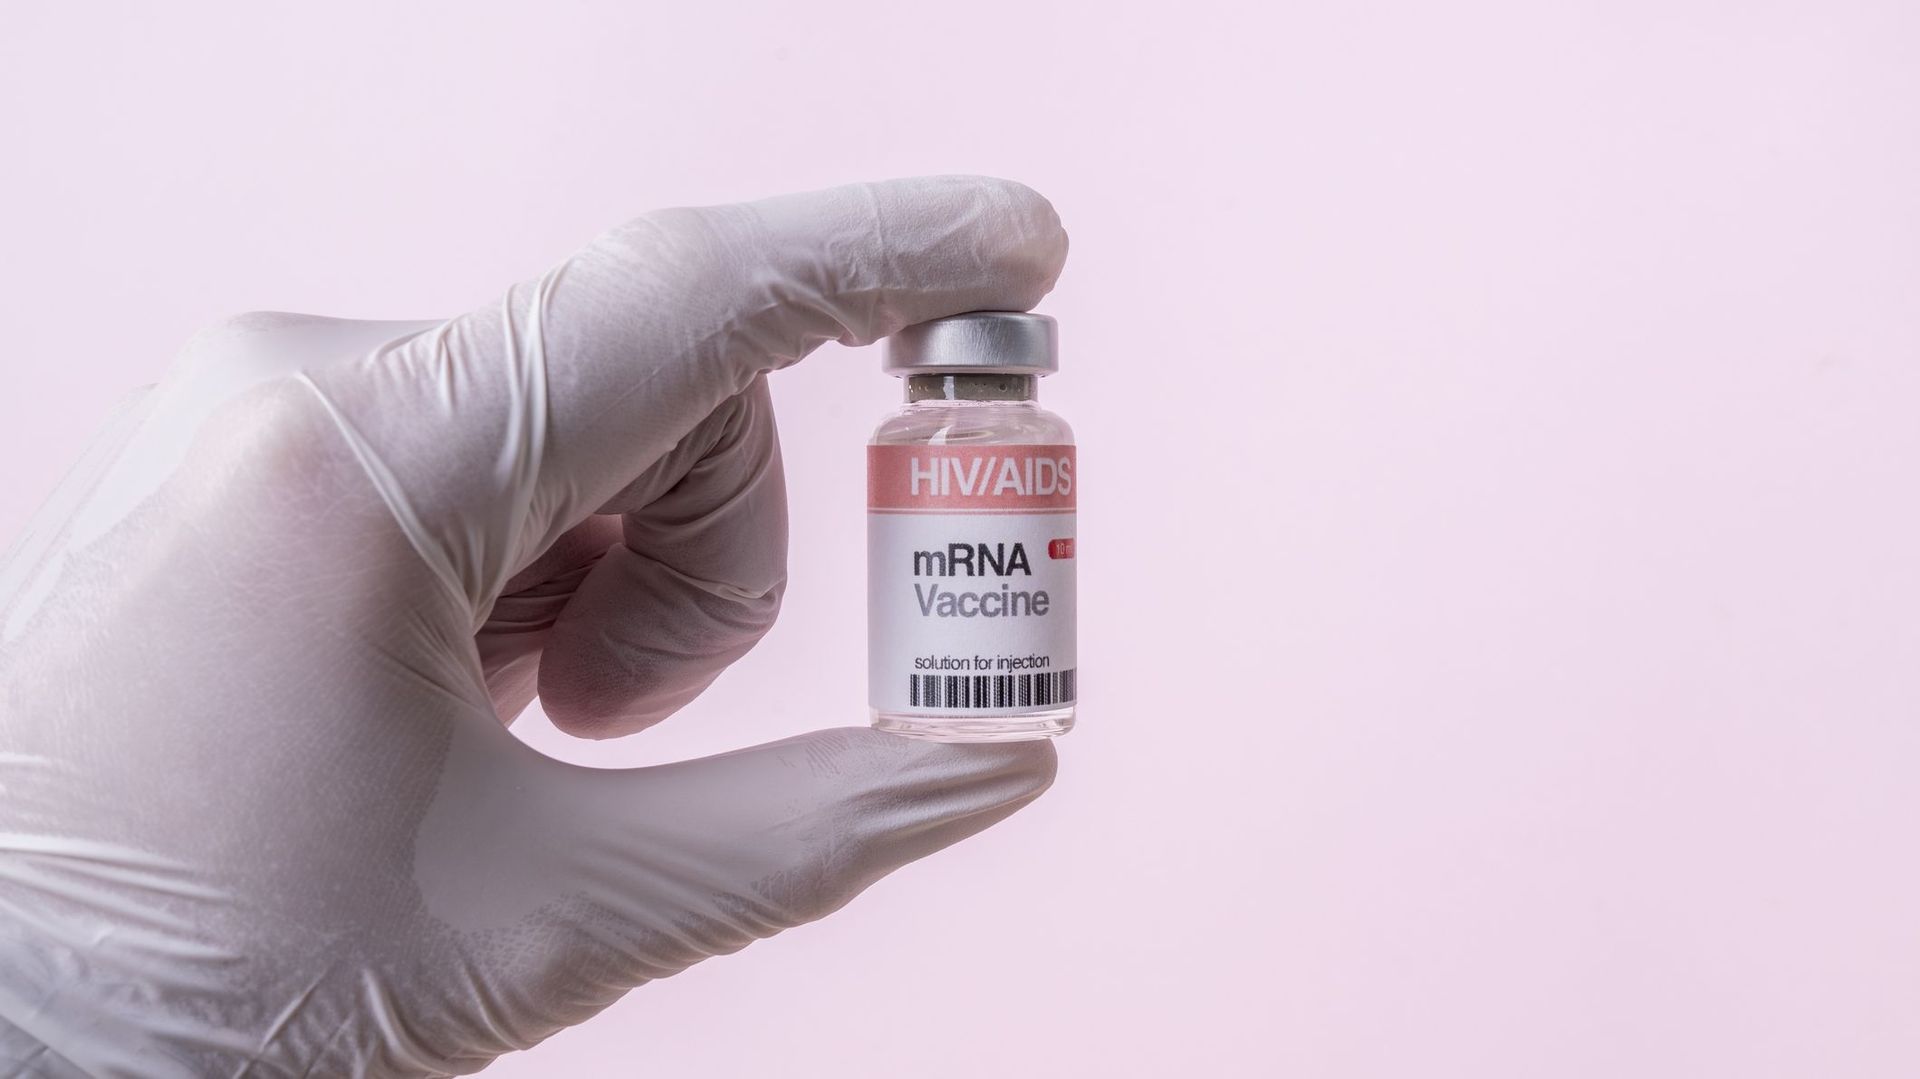 Début des essais sur les humains d'un vaccin contre le VIH utilisant l'ARN messager